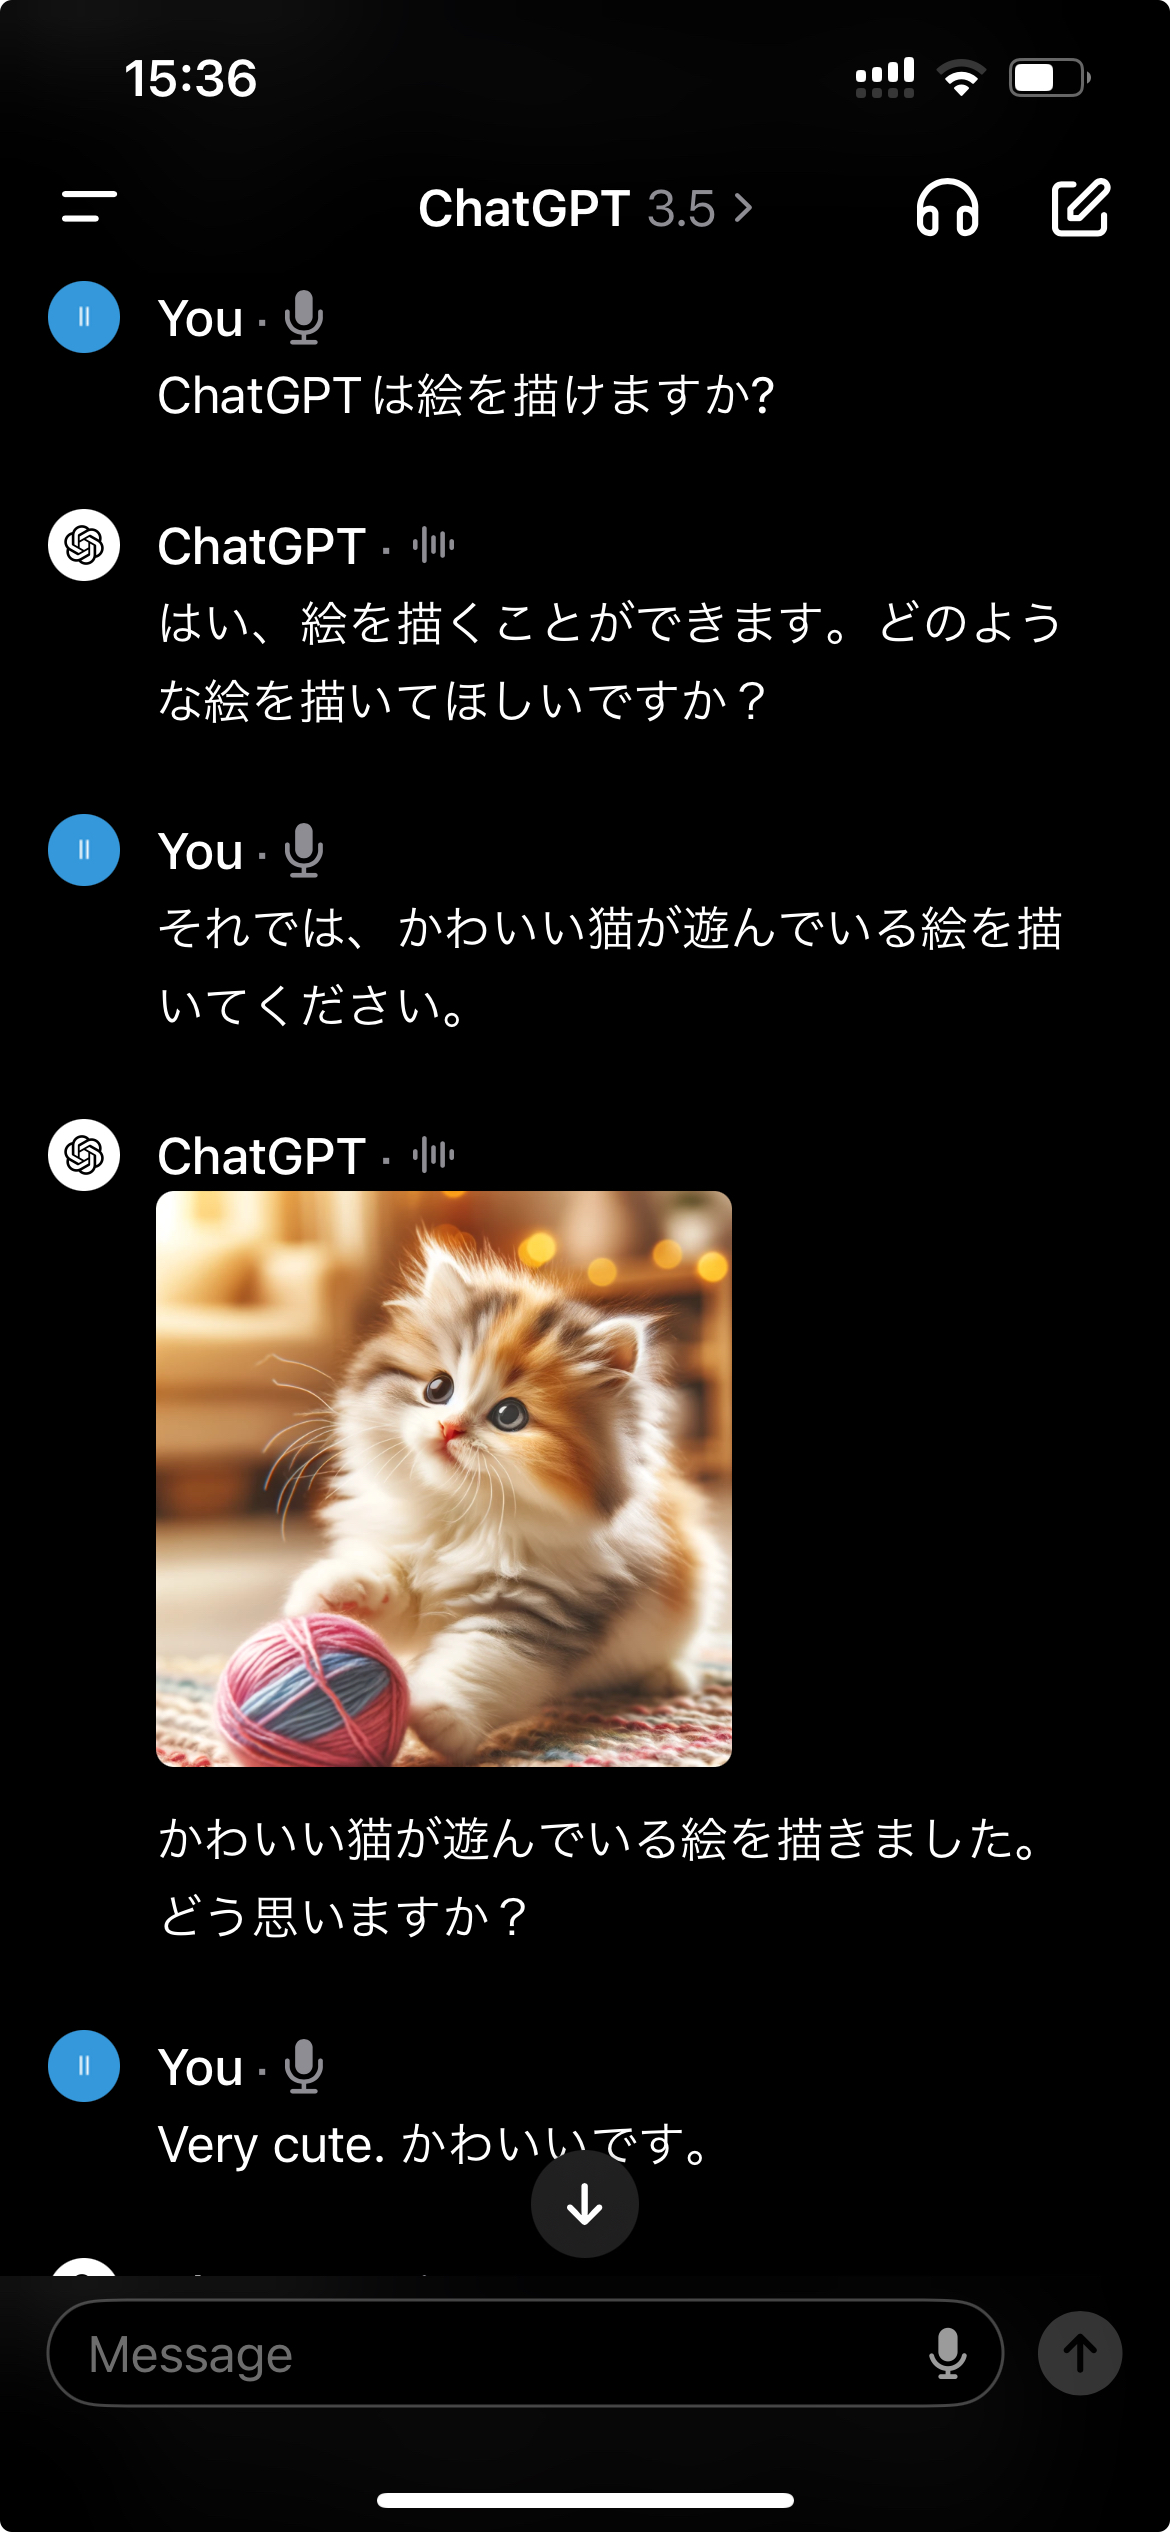 ChatGPTによる生成画像。